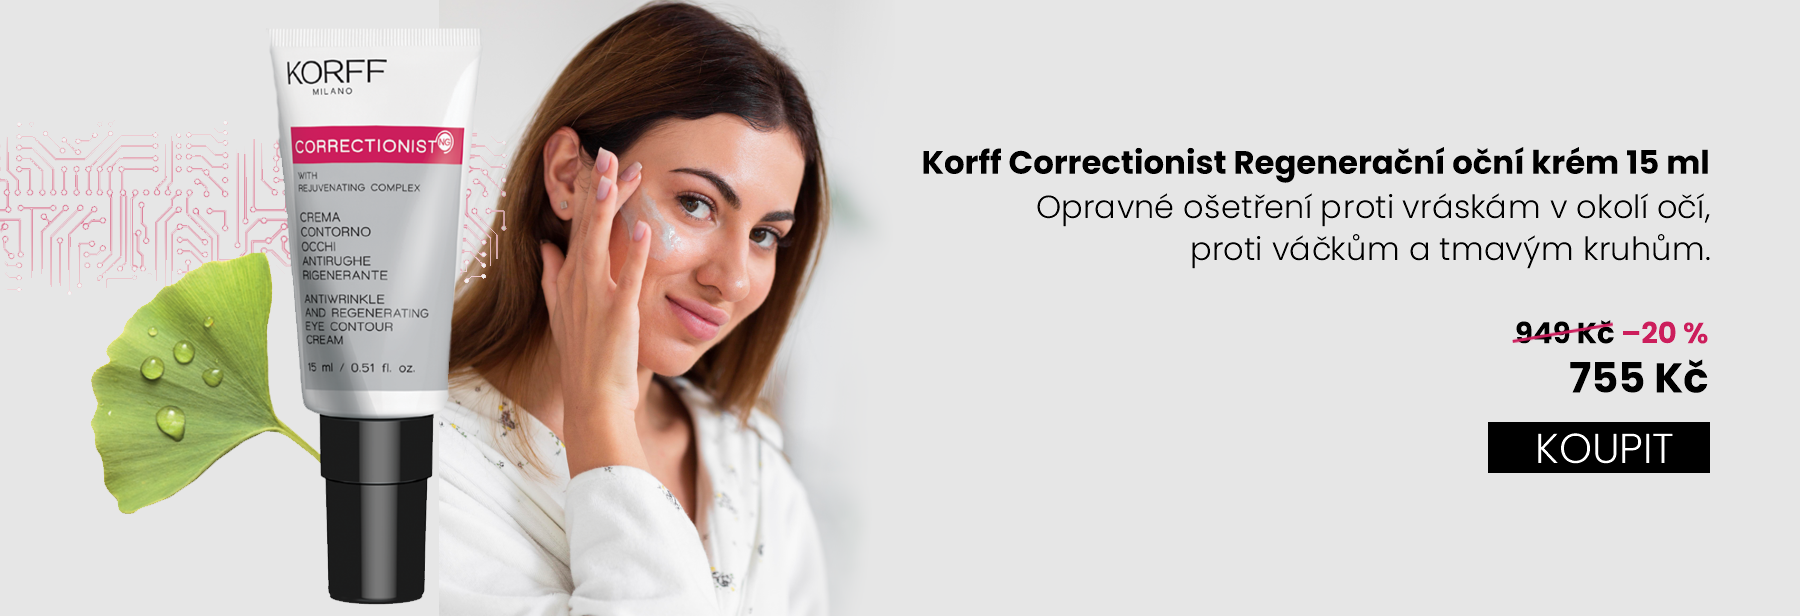 Korf correctionist regenerační oční krém